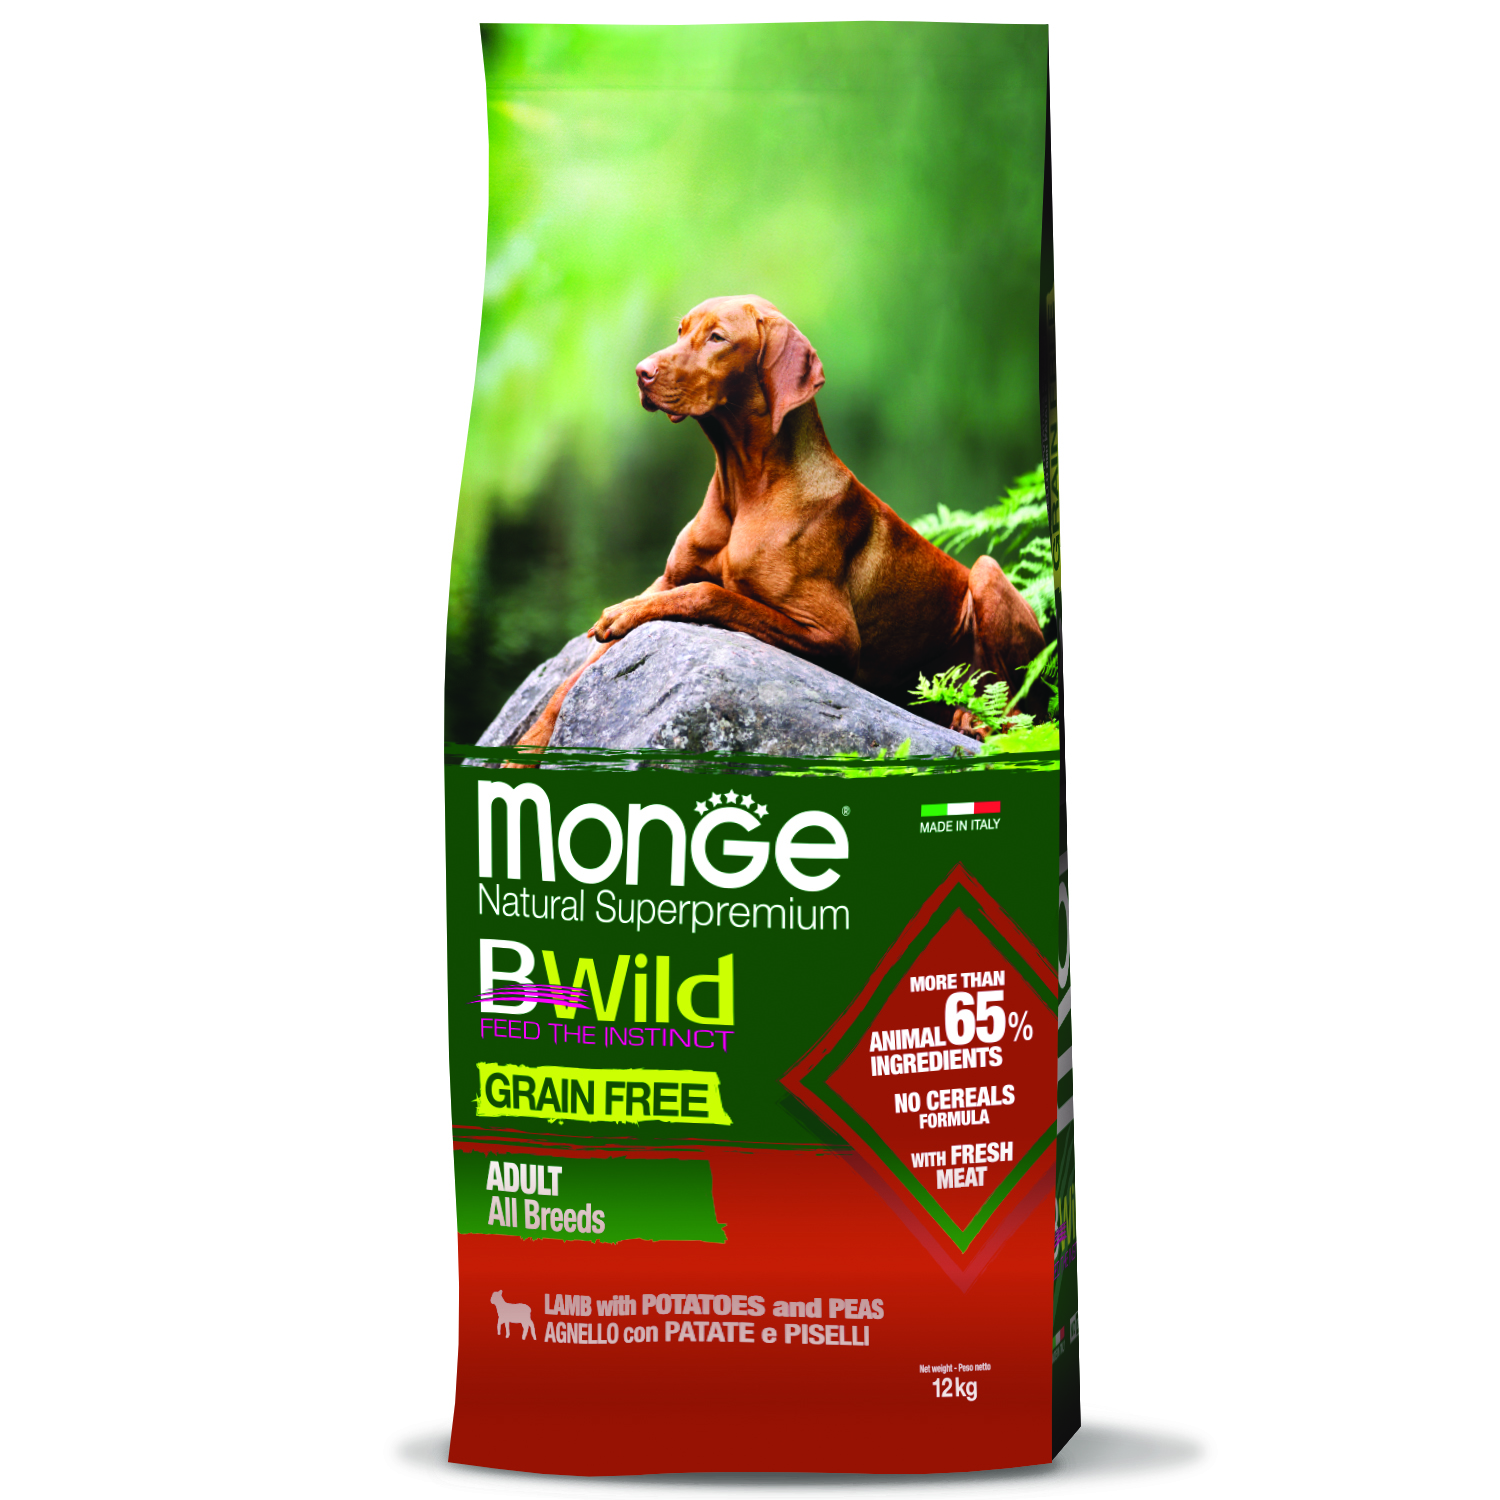 Сухой корм Monge Dog BWild GRAIN FREE для взрослых собак всех пород, беззерновой, из ягненка с картофелем и горохом 12 кг